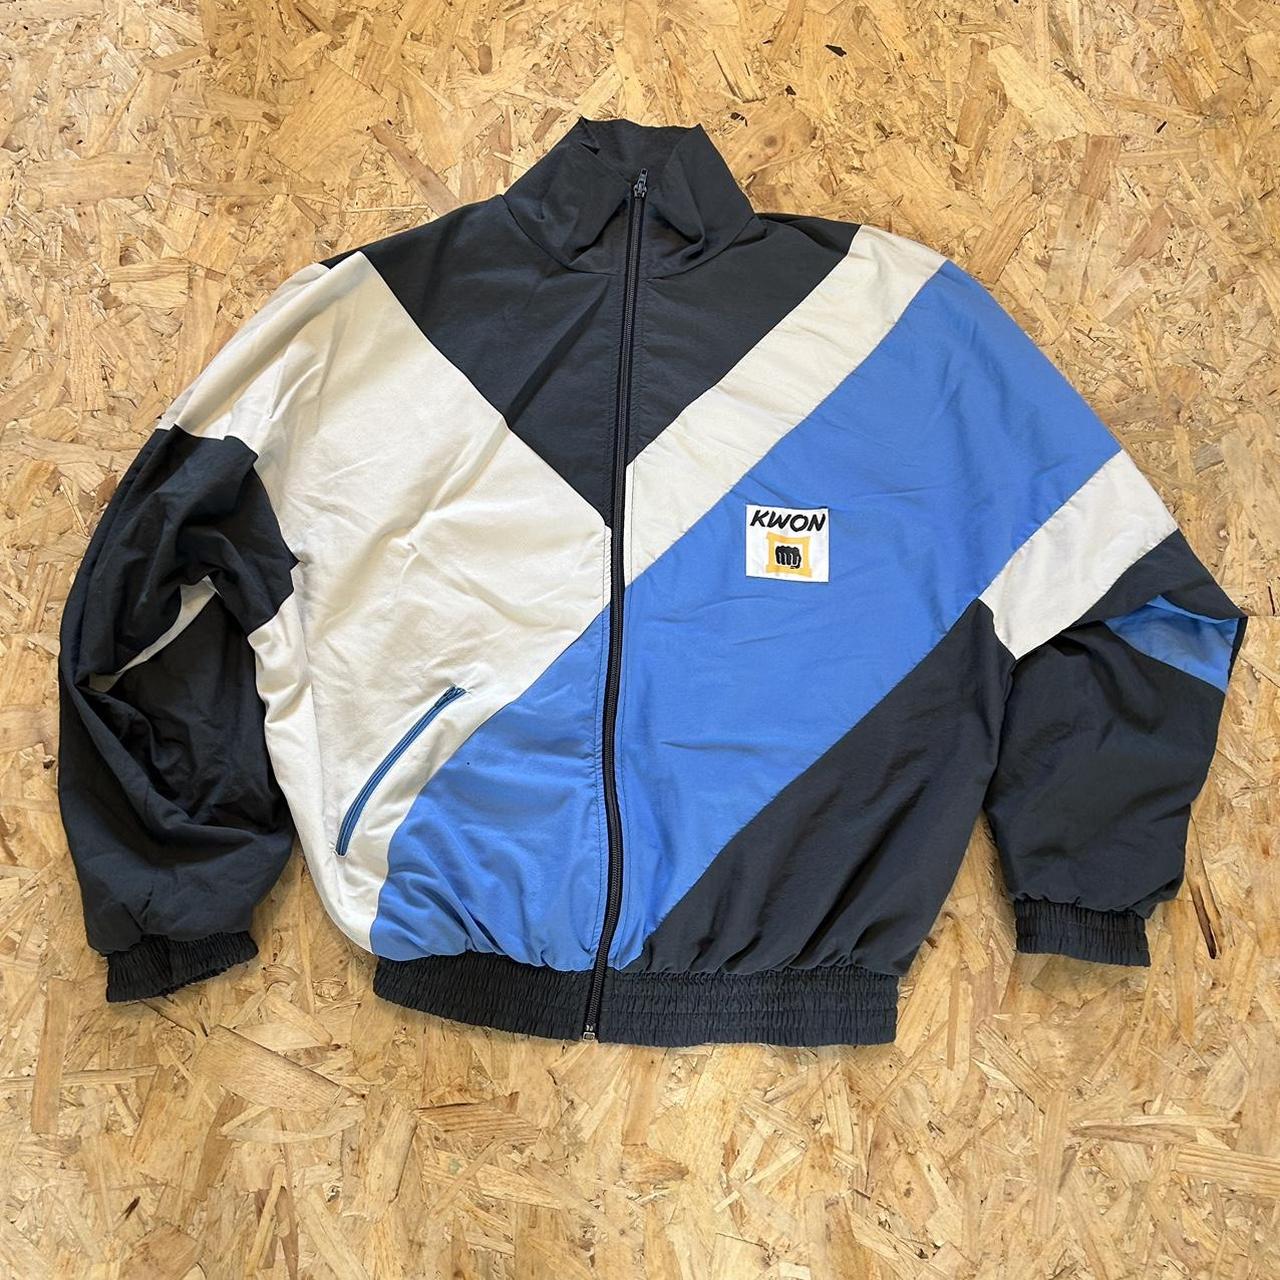 Vintage ‘Kwon’ Black, Blue & White Tracksuit Jacket... - Depop